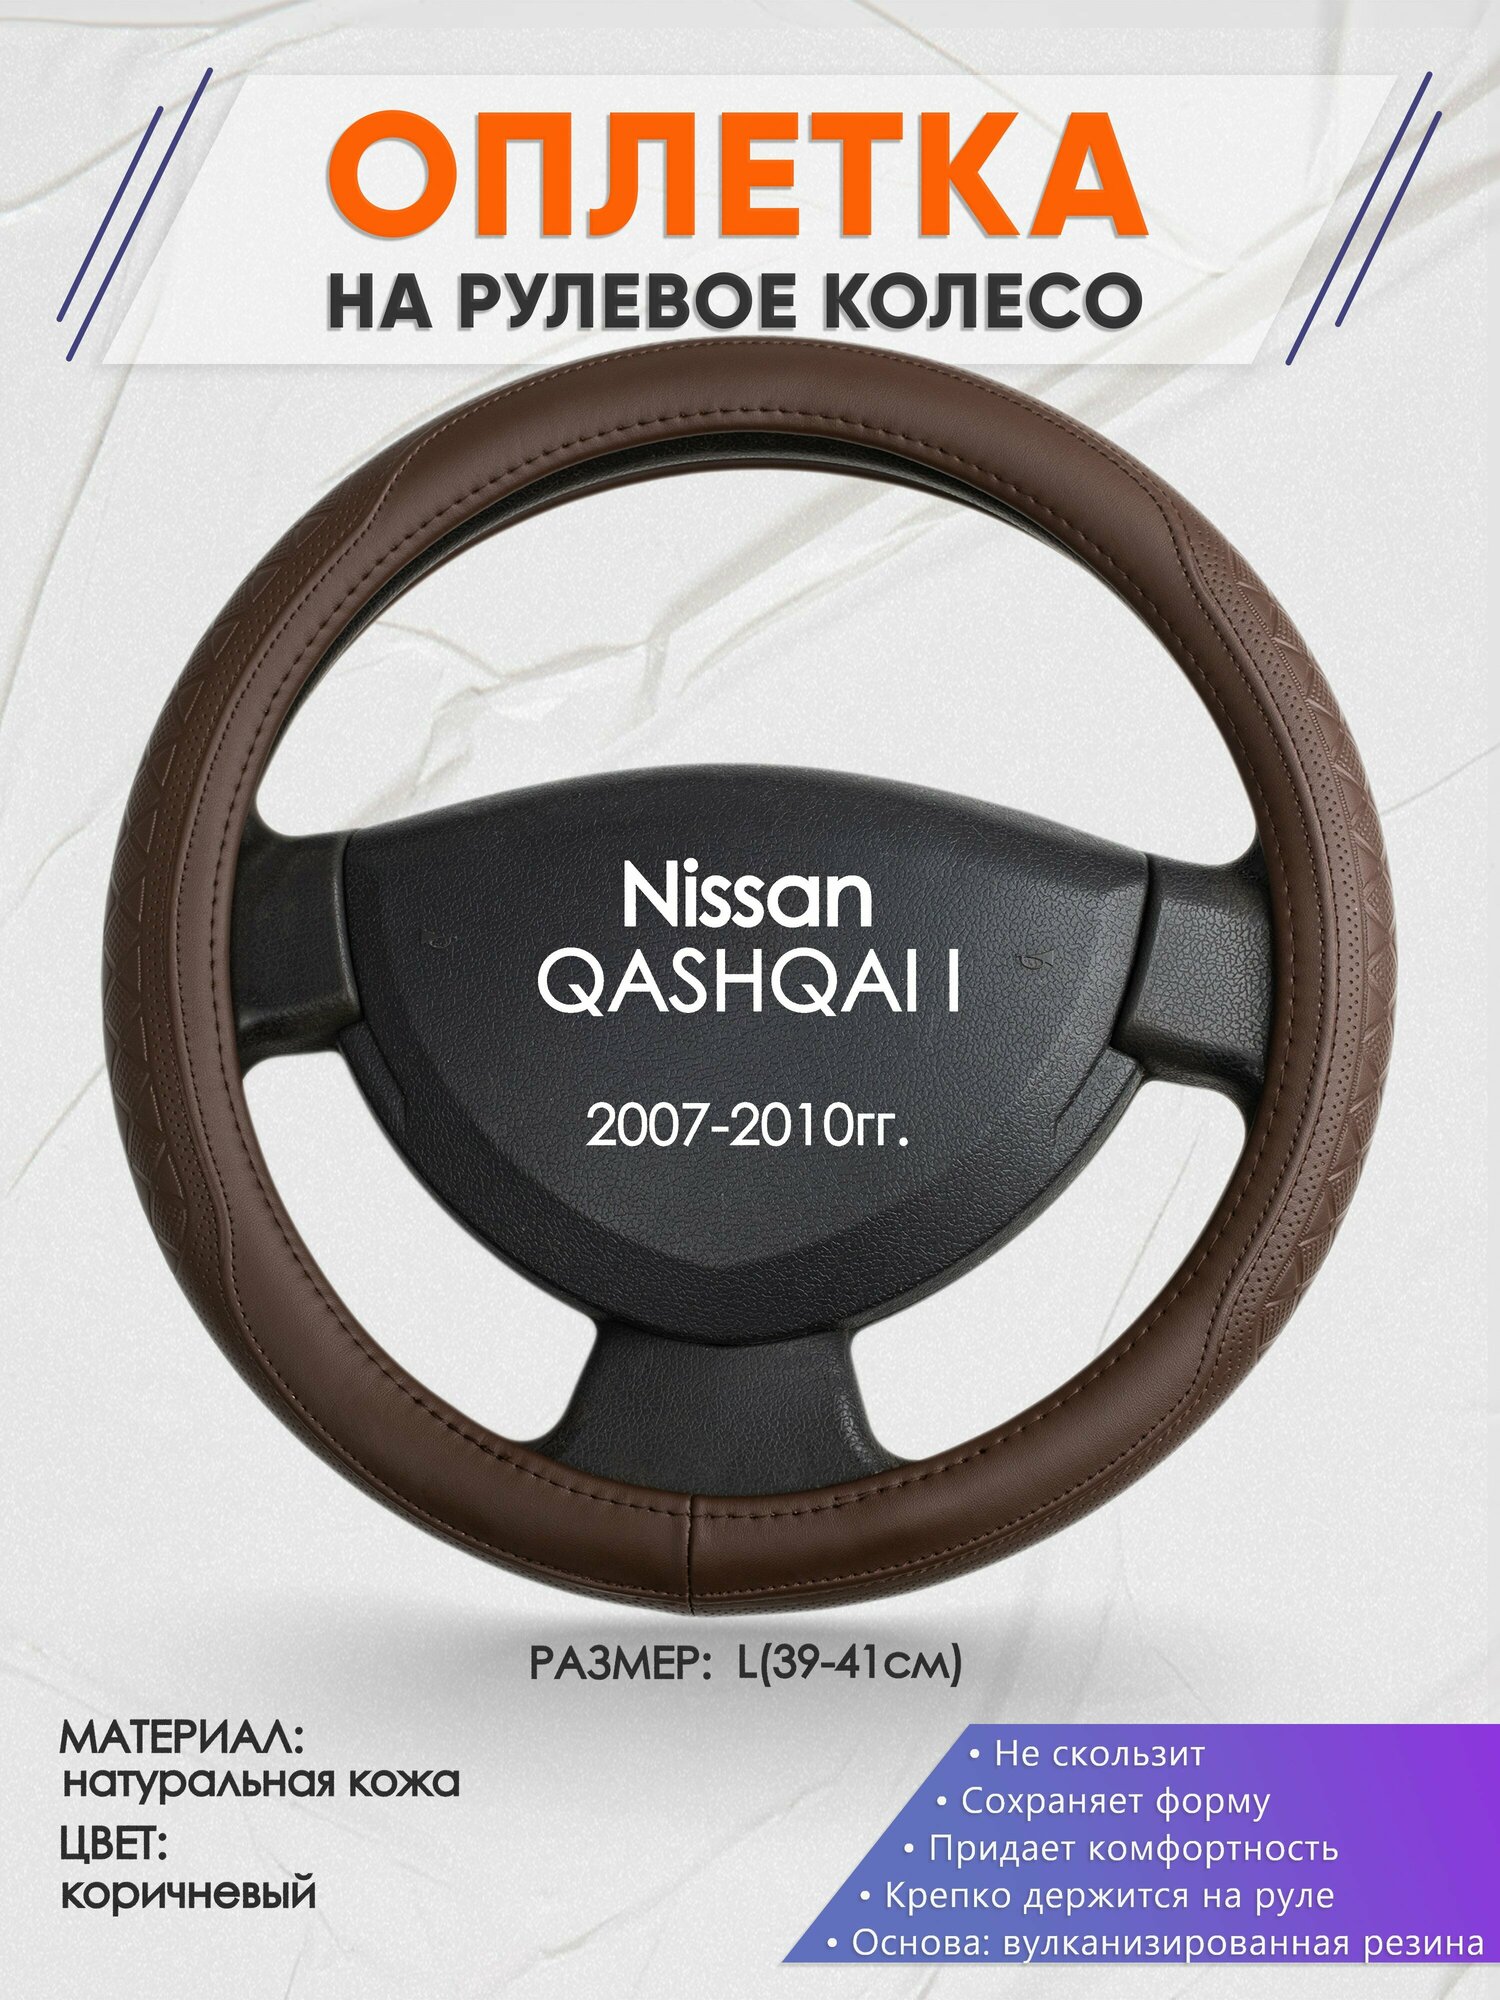 Оплетка на руль для Nissan QASHQAI I(Ниссан Кашкай) 2007-2010, L(39-41см), Натуральная кожа 88